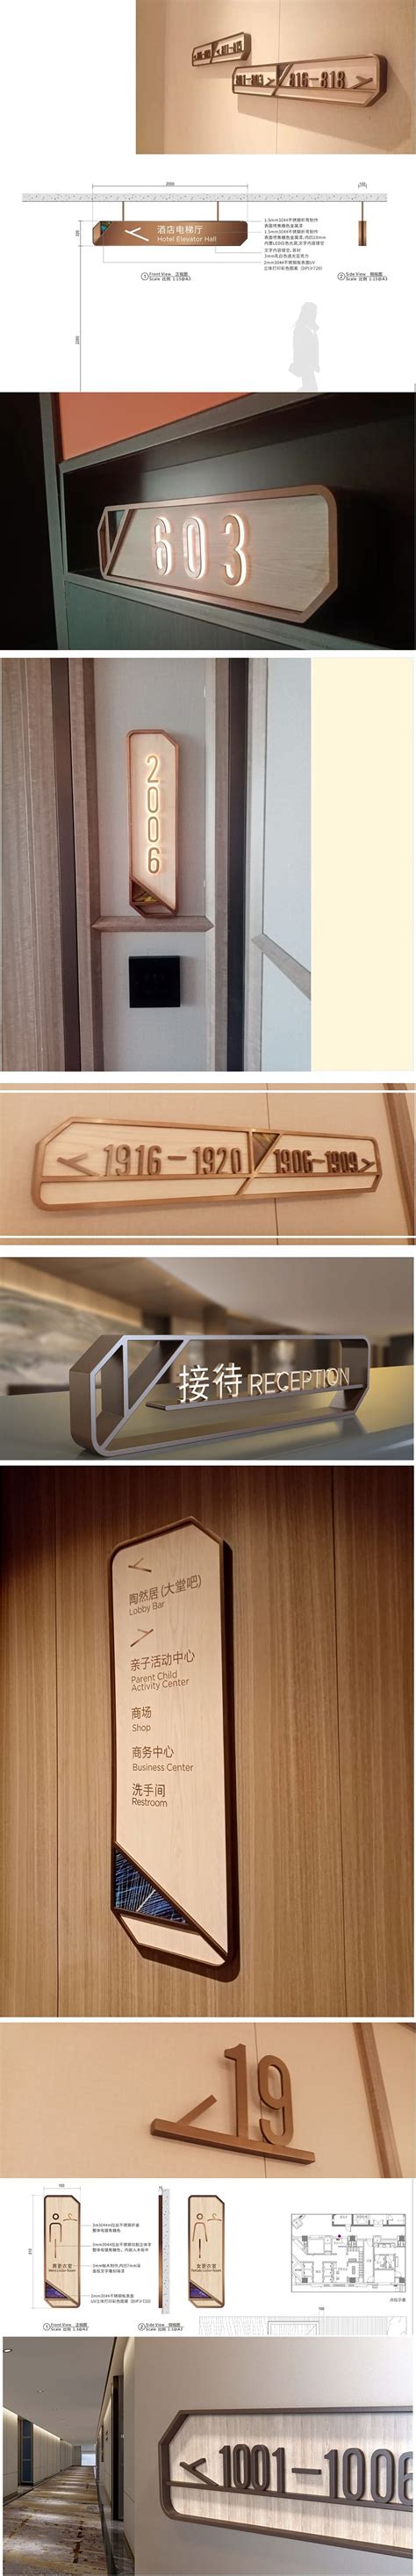 义乌银都酒店-杭州正德标识有限公司